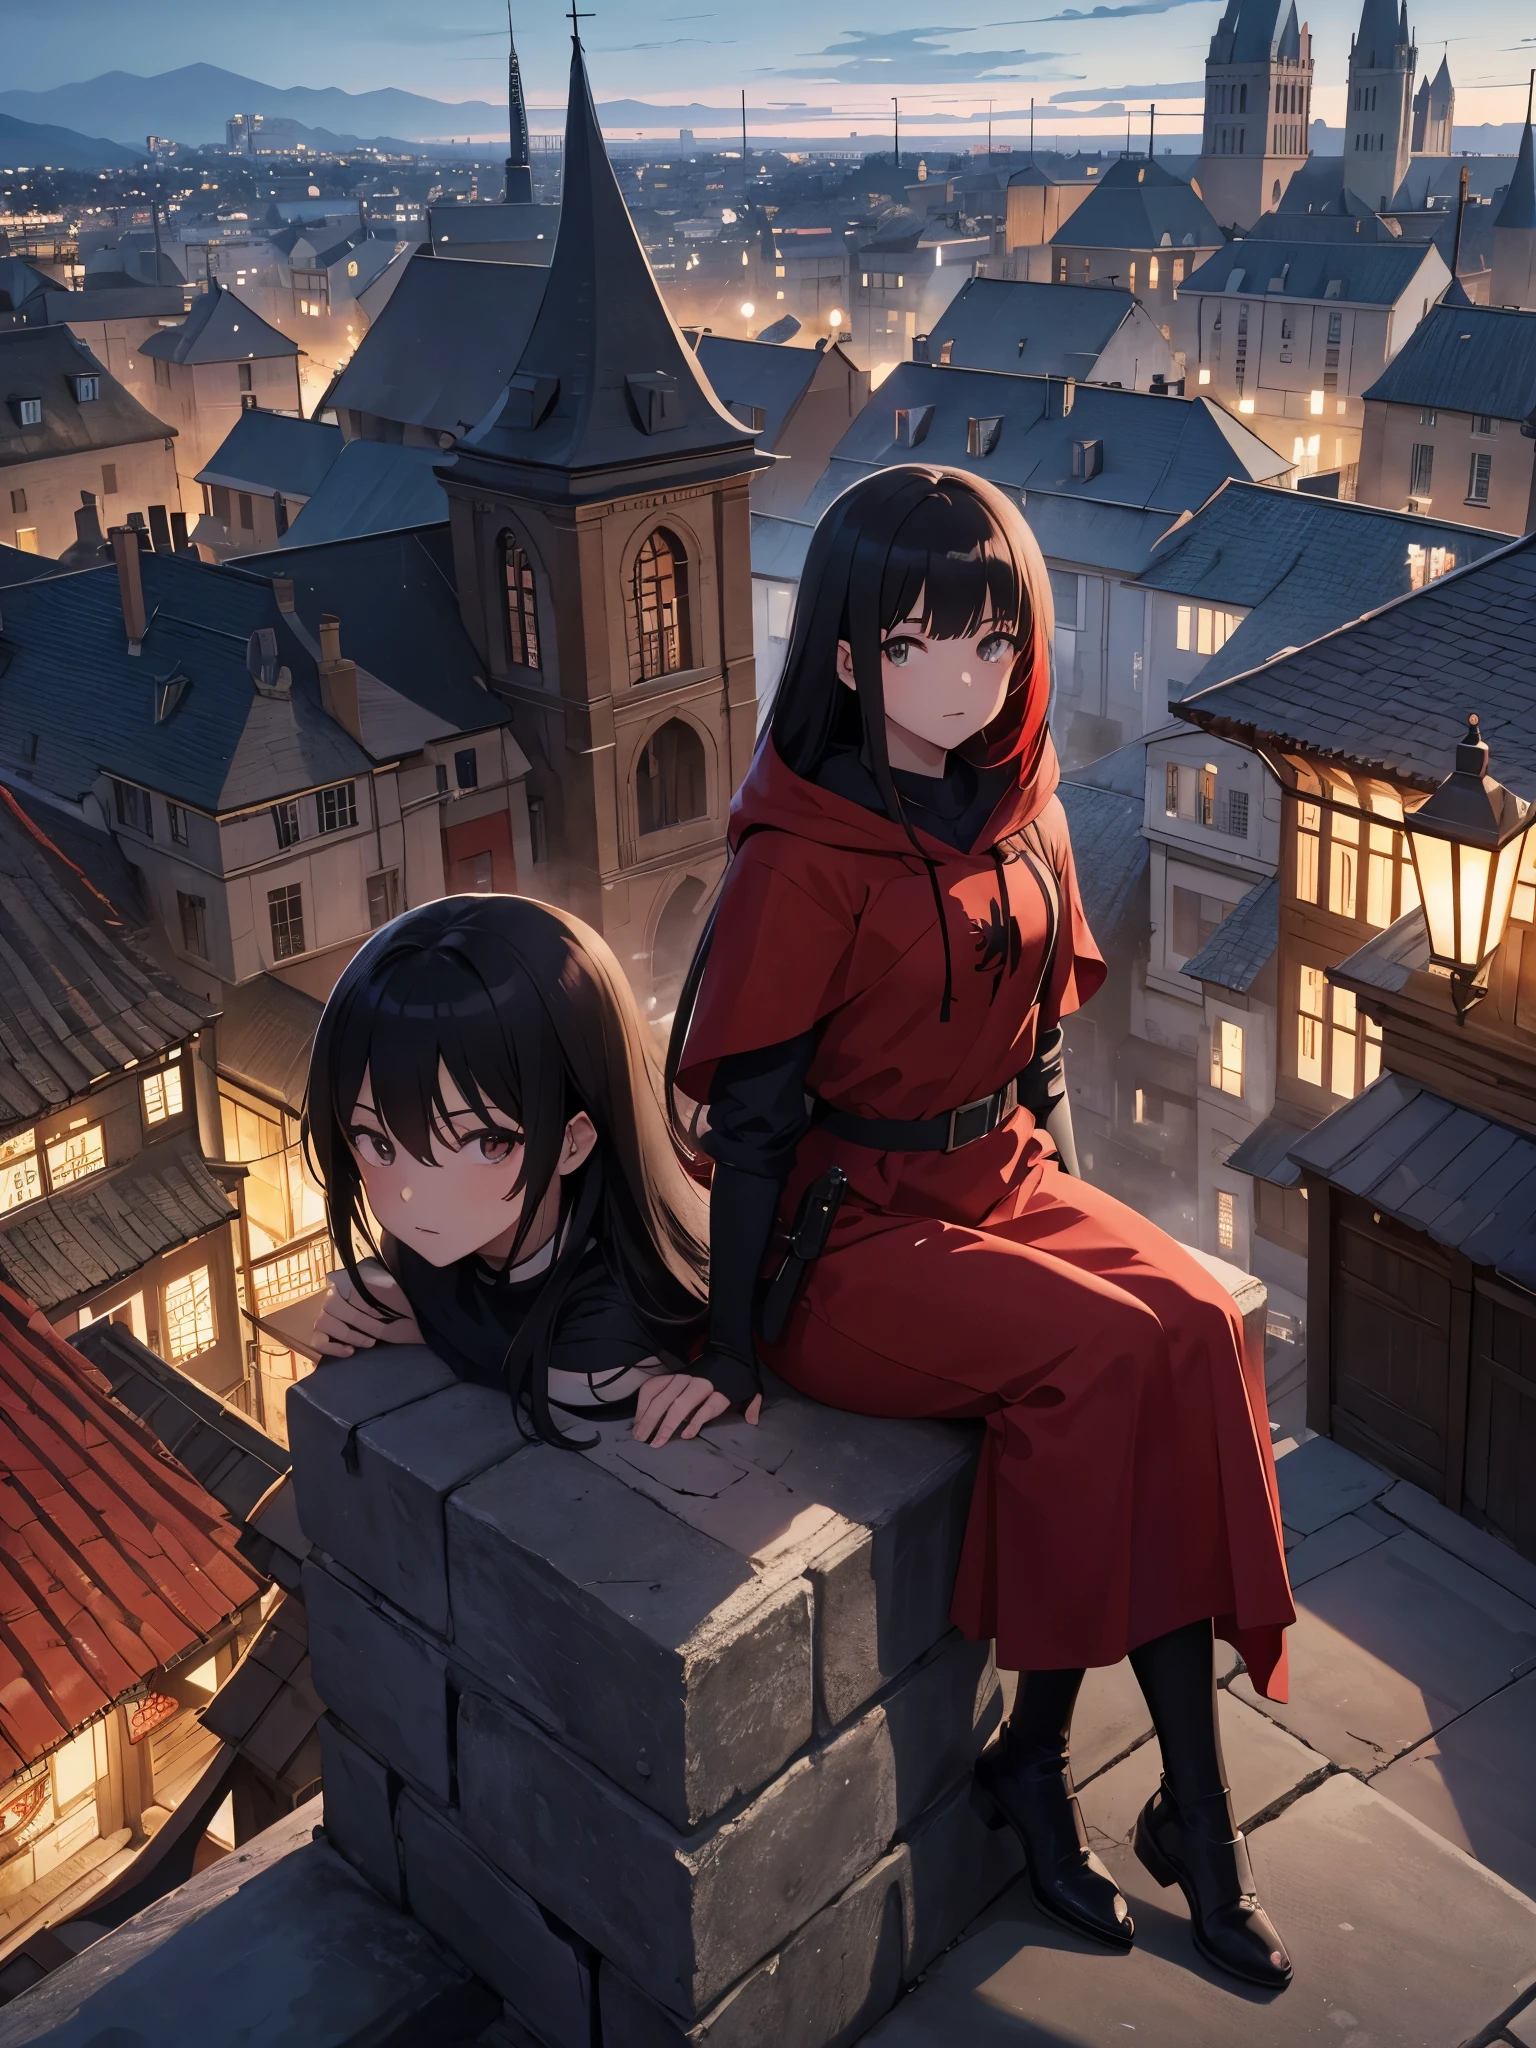 Anime-Illustration、Hohe Auflösung、15 Jahre alt、rote Kapuze, schwarze glatte Haare、mittelalterliche französische Stadt in der Abenddämmerung、Menge von Schatten、Setz dich auf den Boden